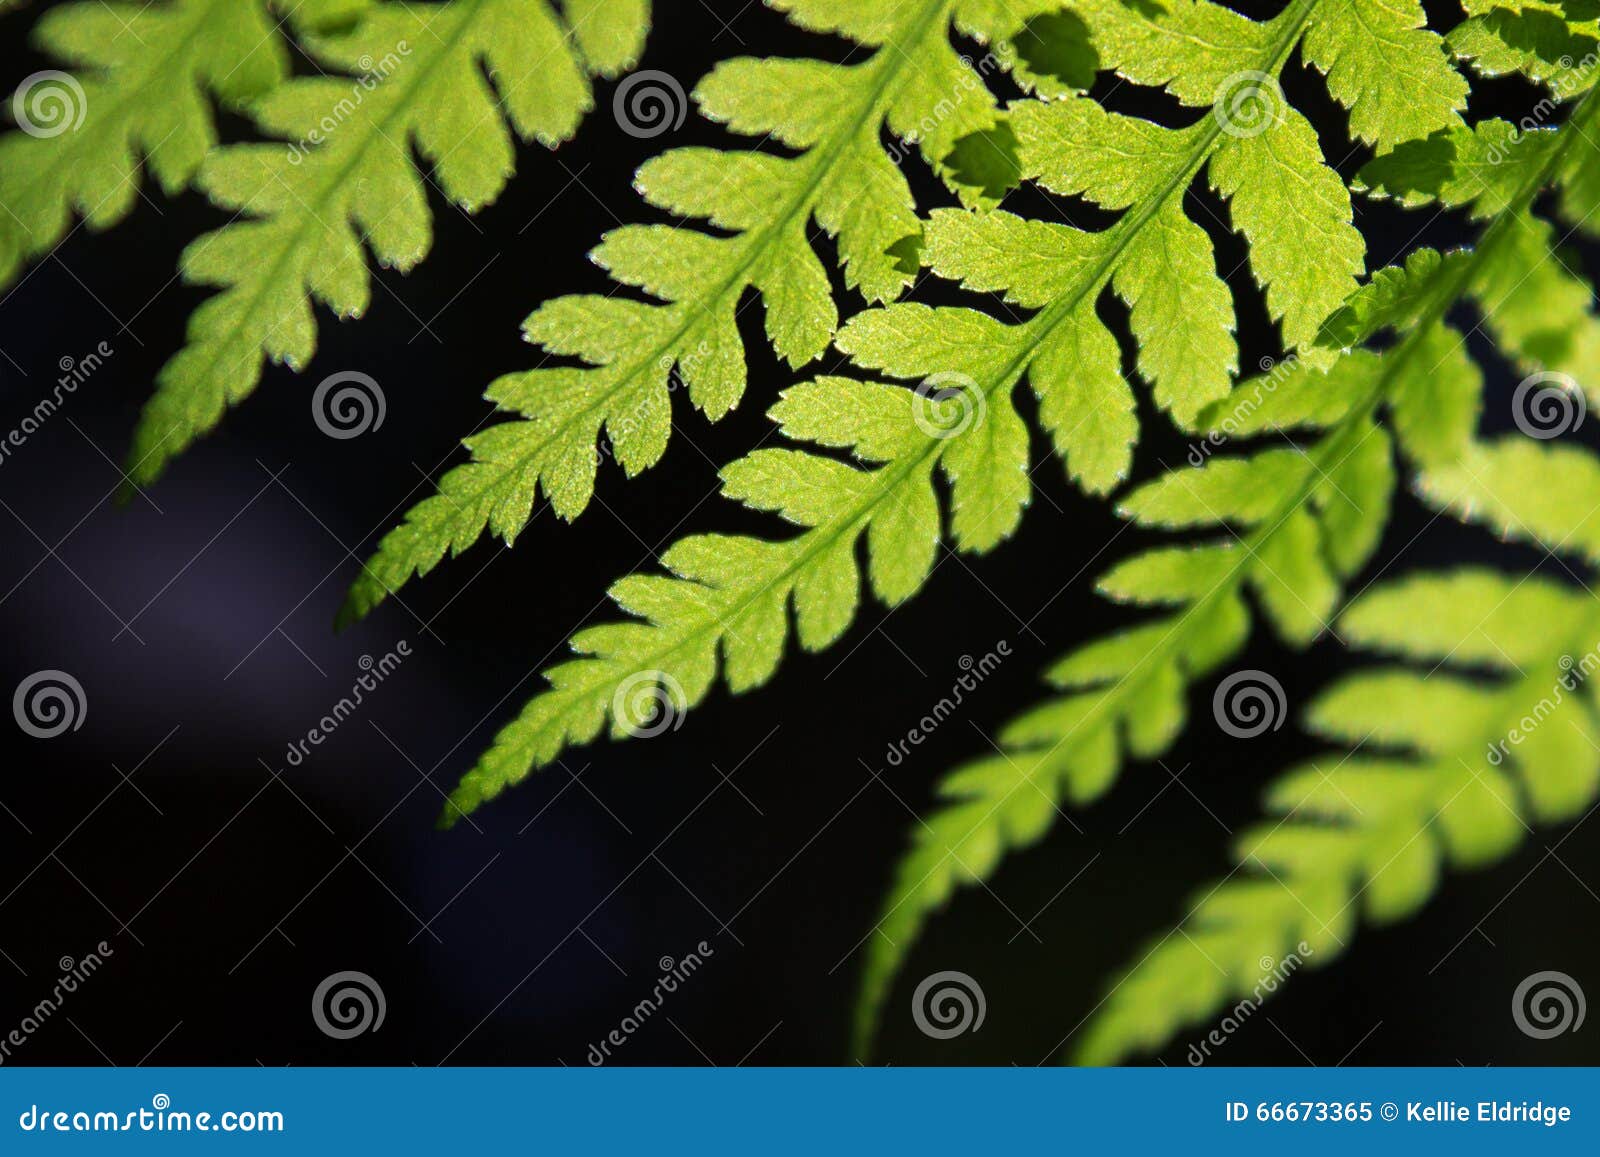 closeup of a fern frond